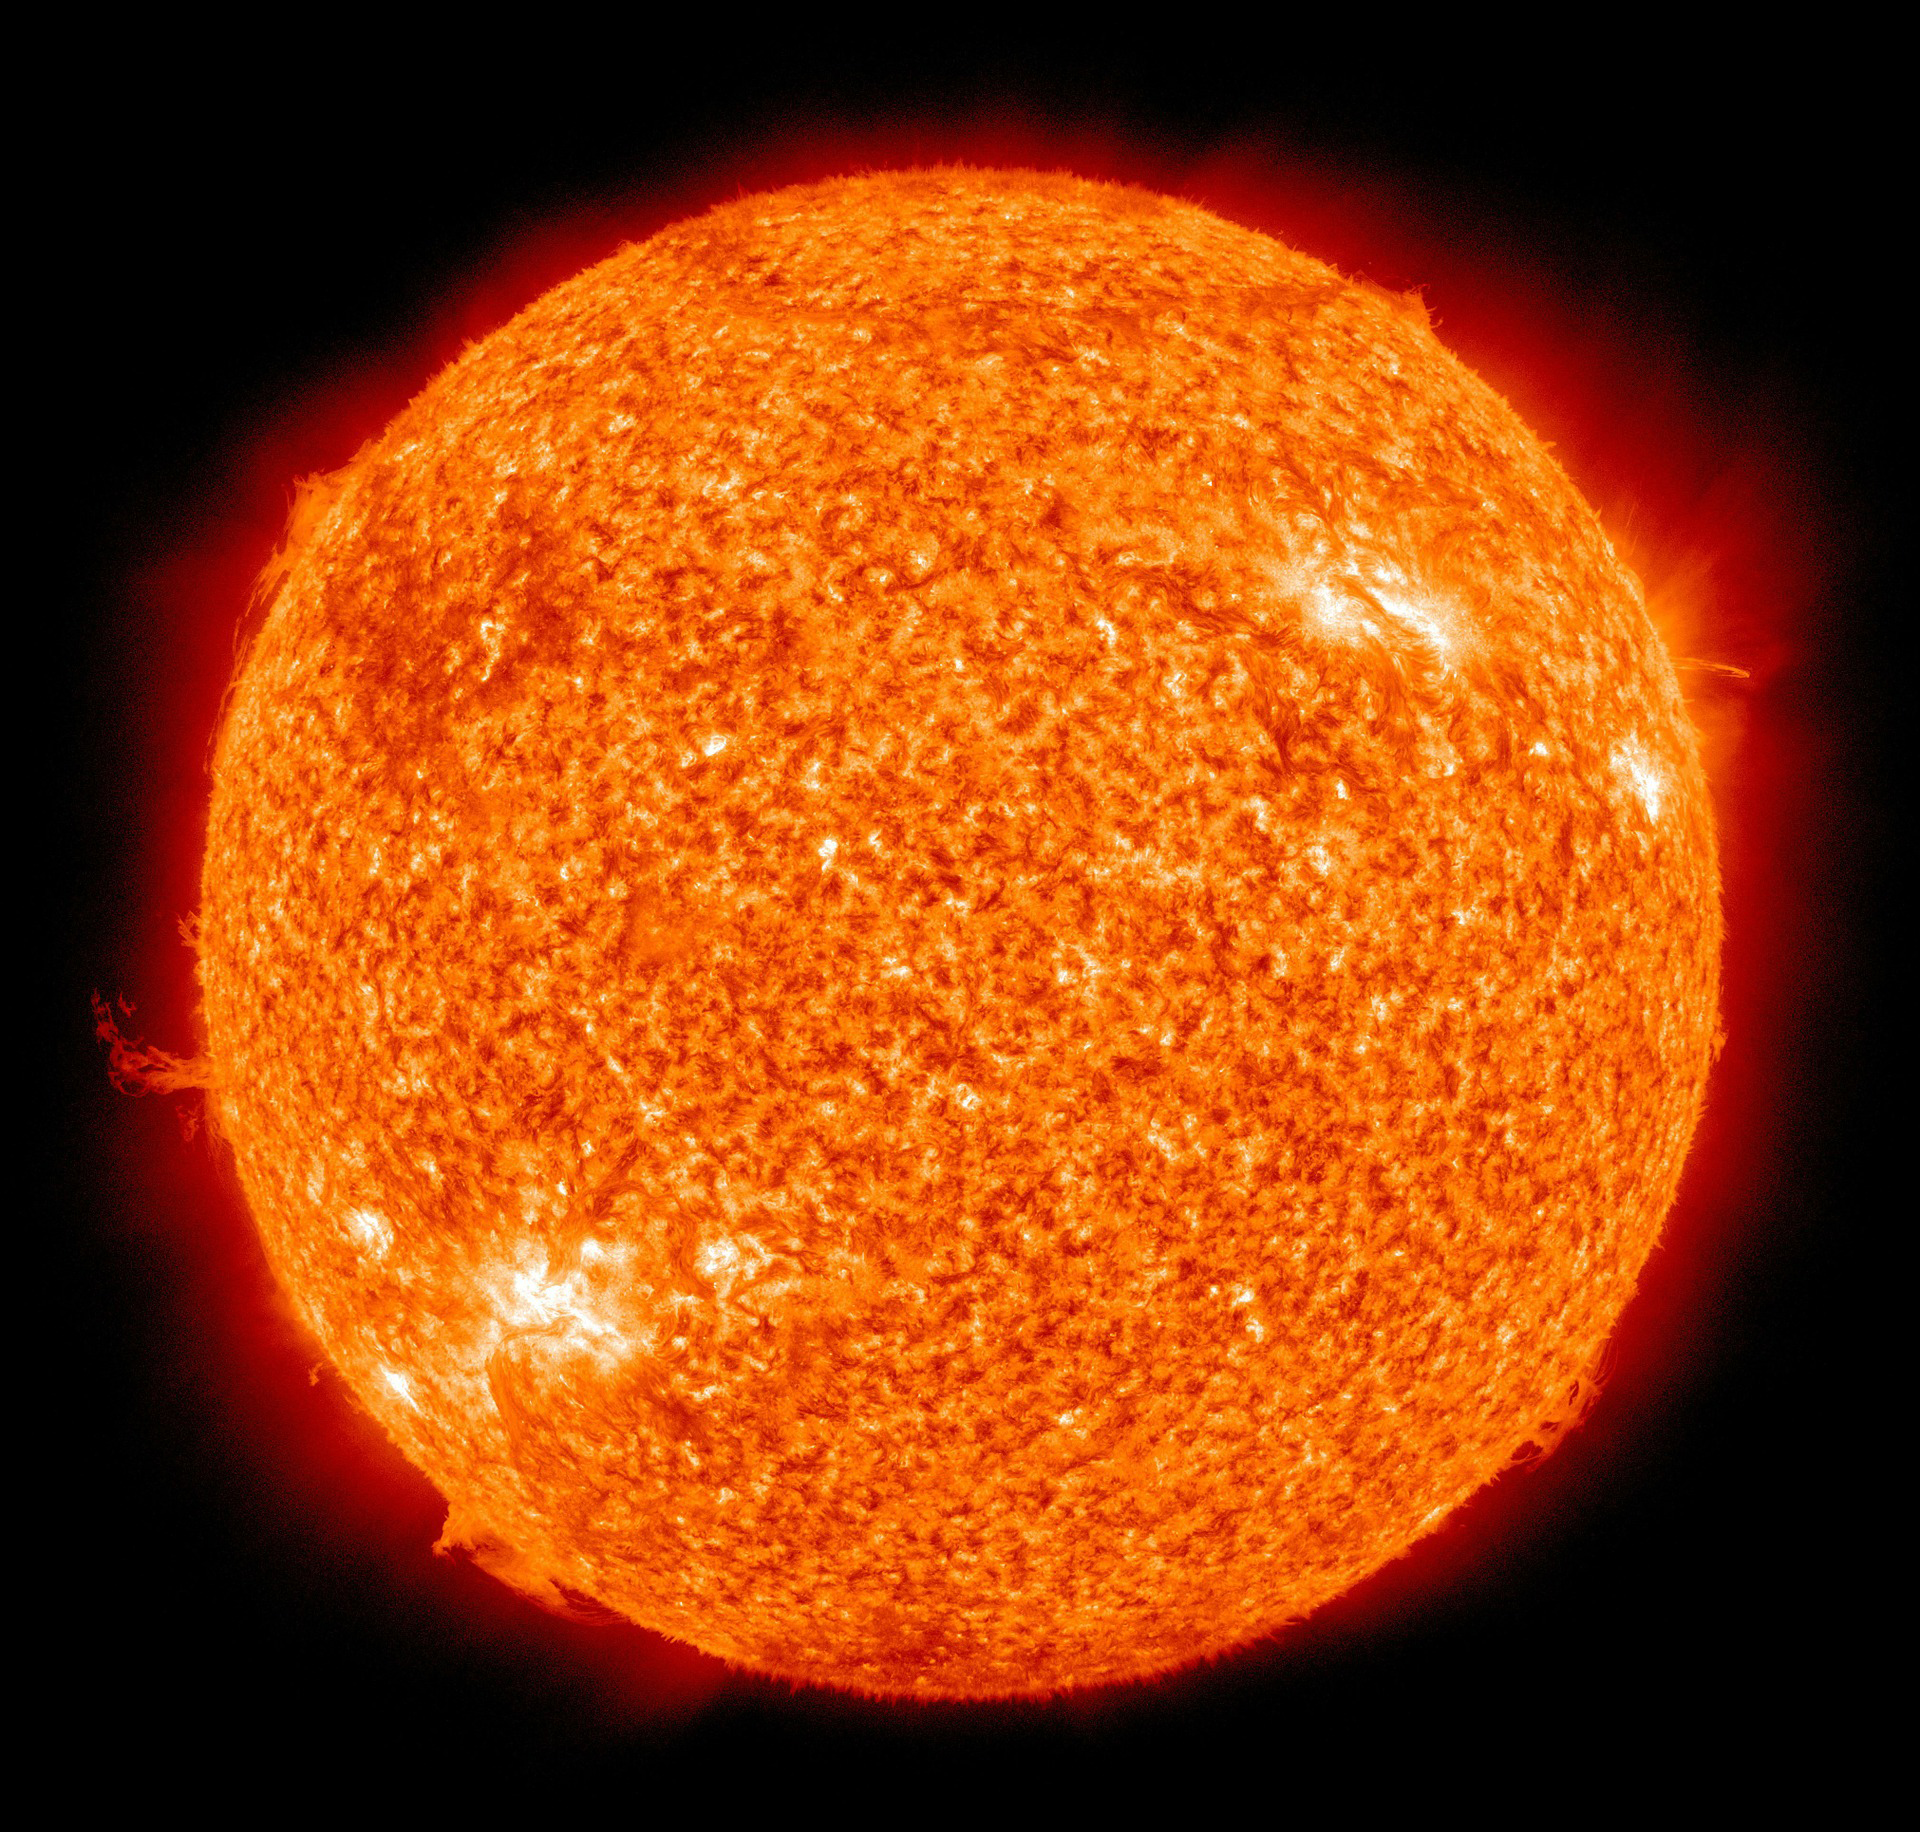 Bei koronalen Massenauswürfen werden riesige Wolken von magnetisiertem Sonnenplasma in den interplanetaren Raum geschleudert. Foto: pixabay 